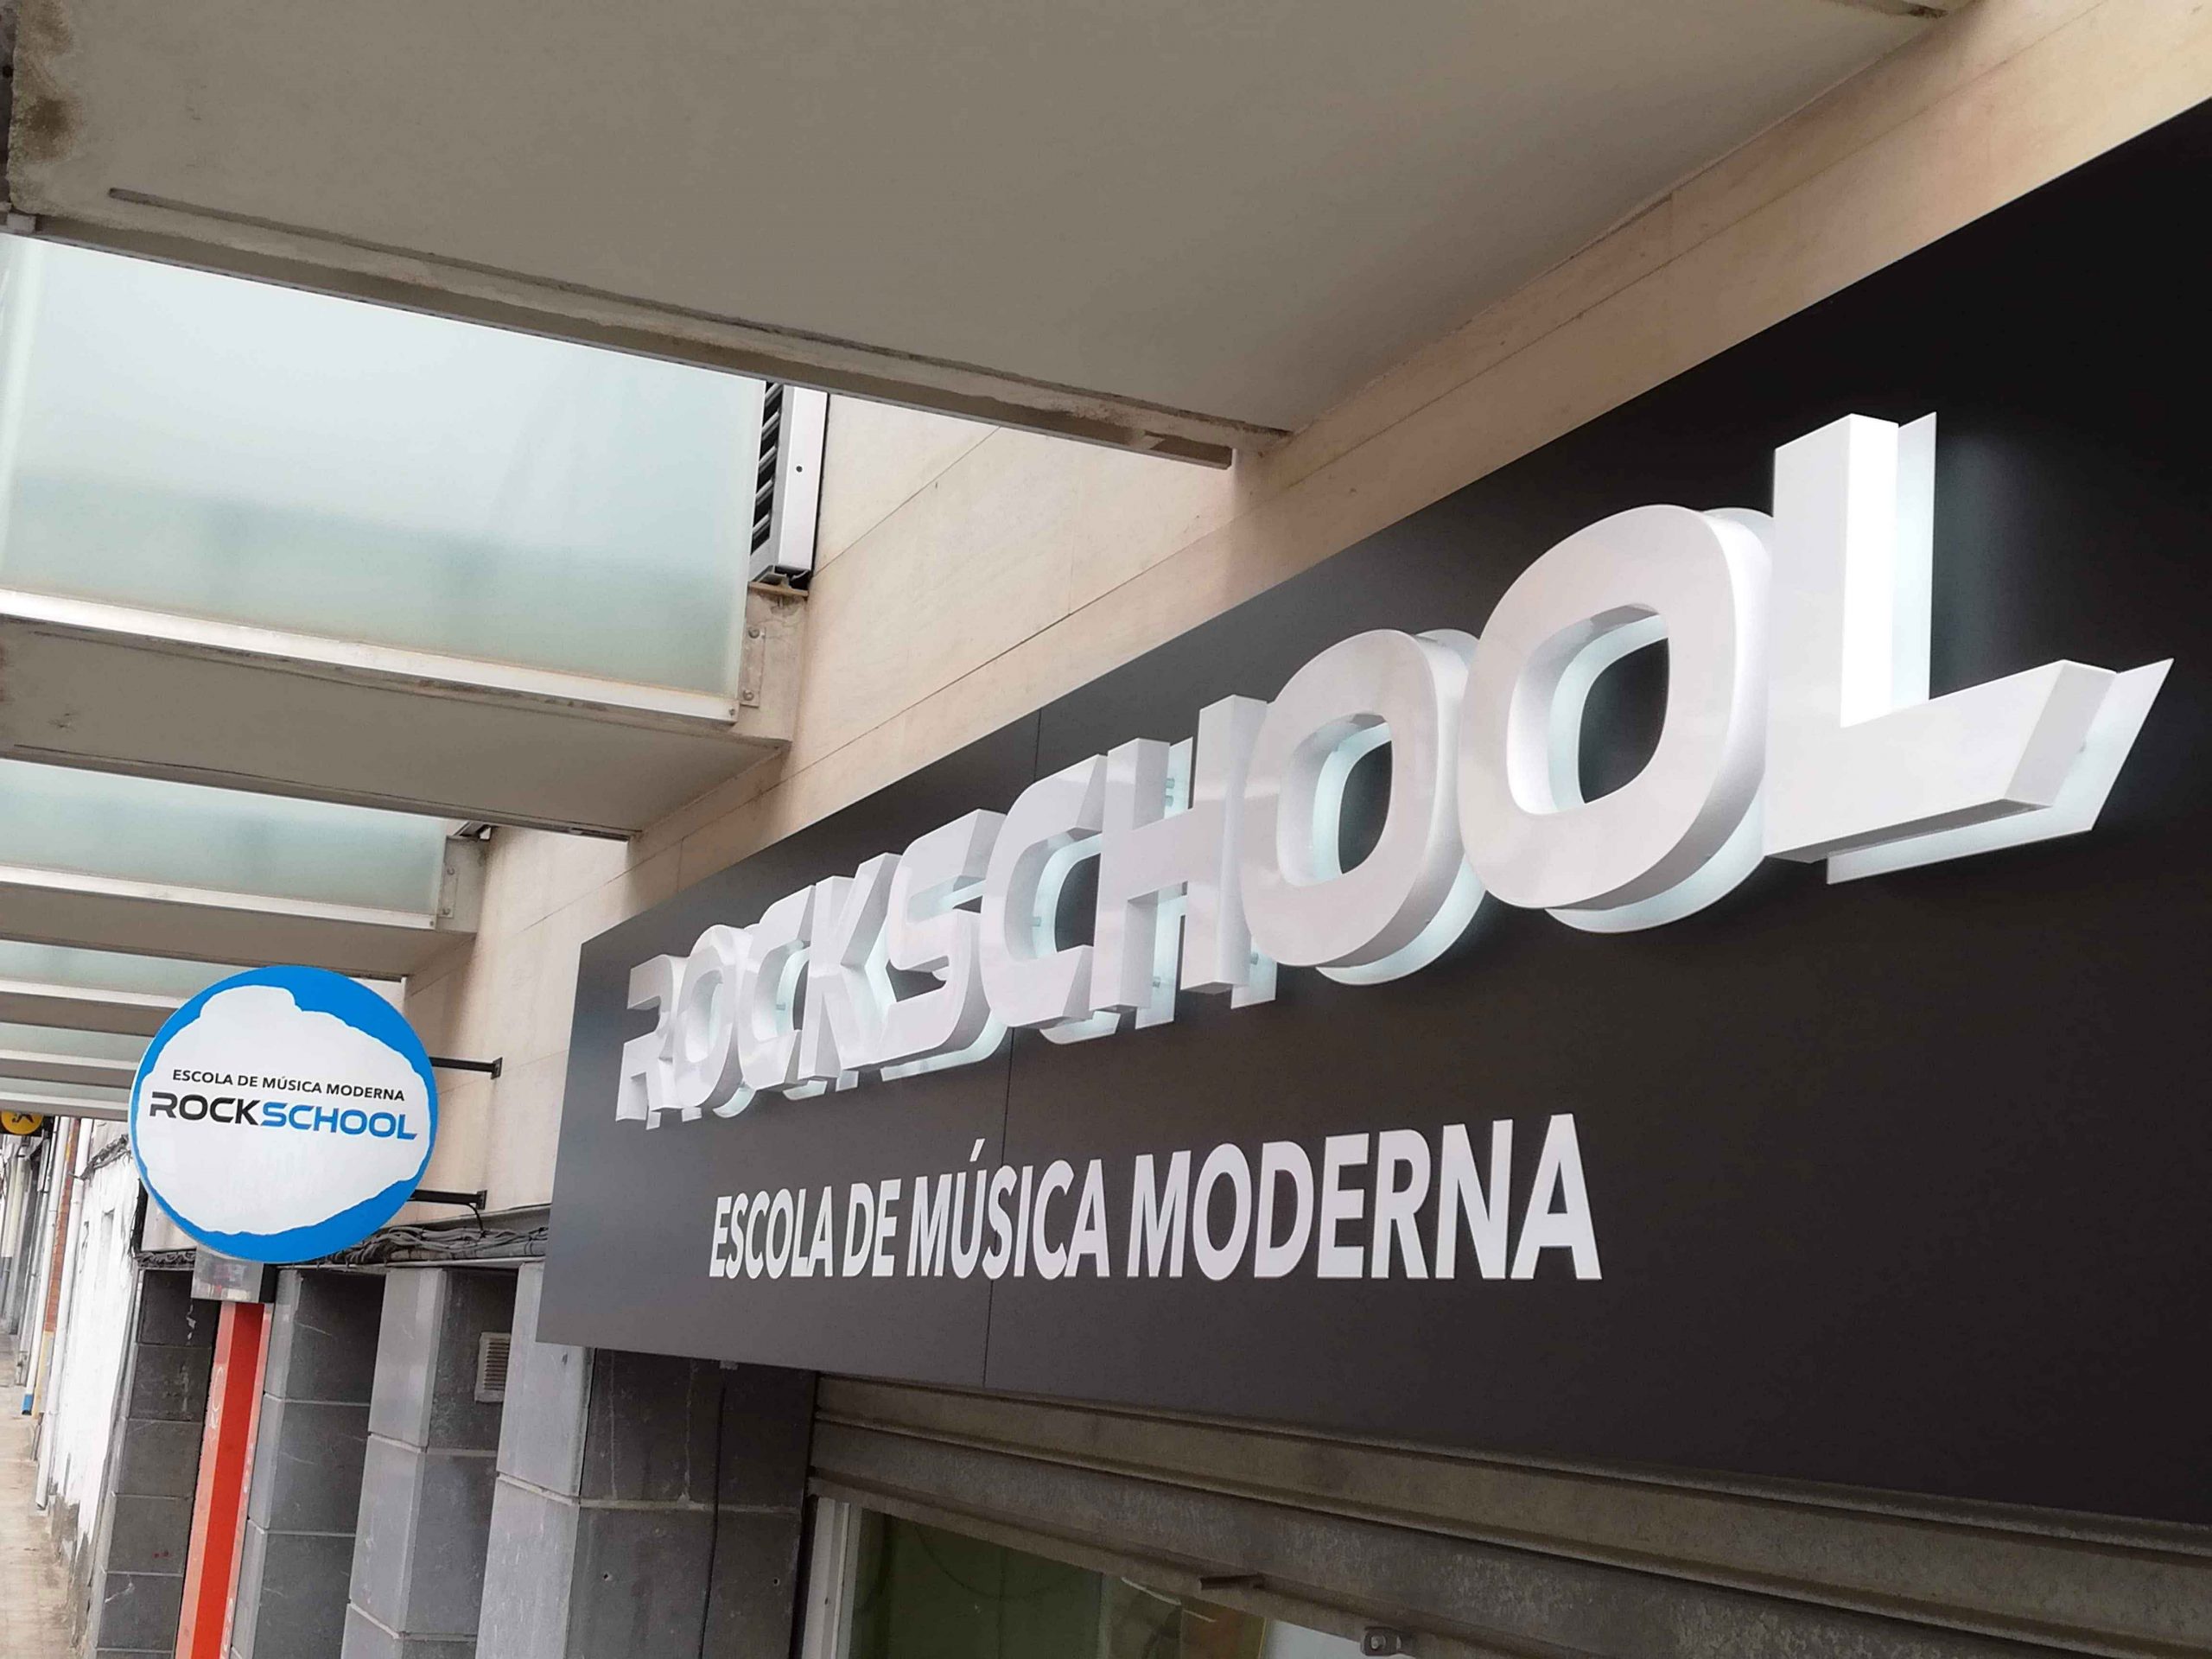 Escola de música moderna - Roide